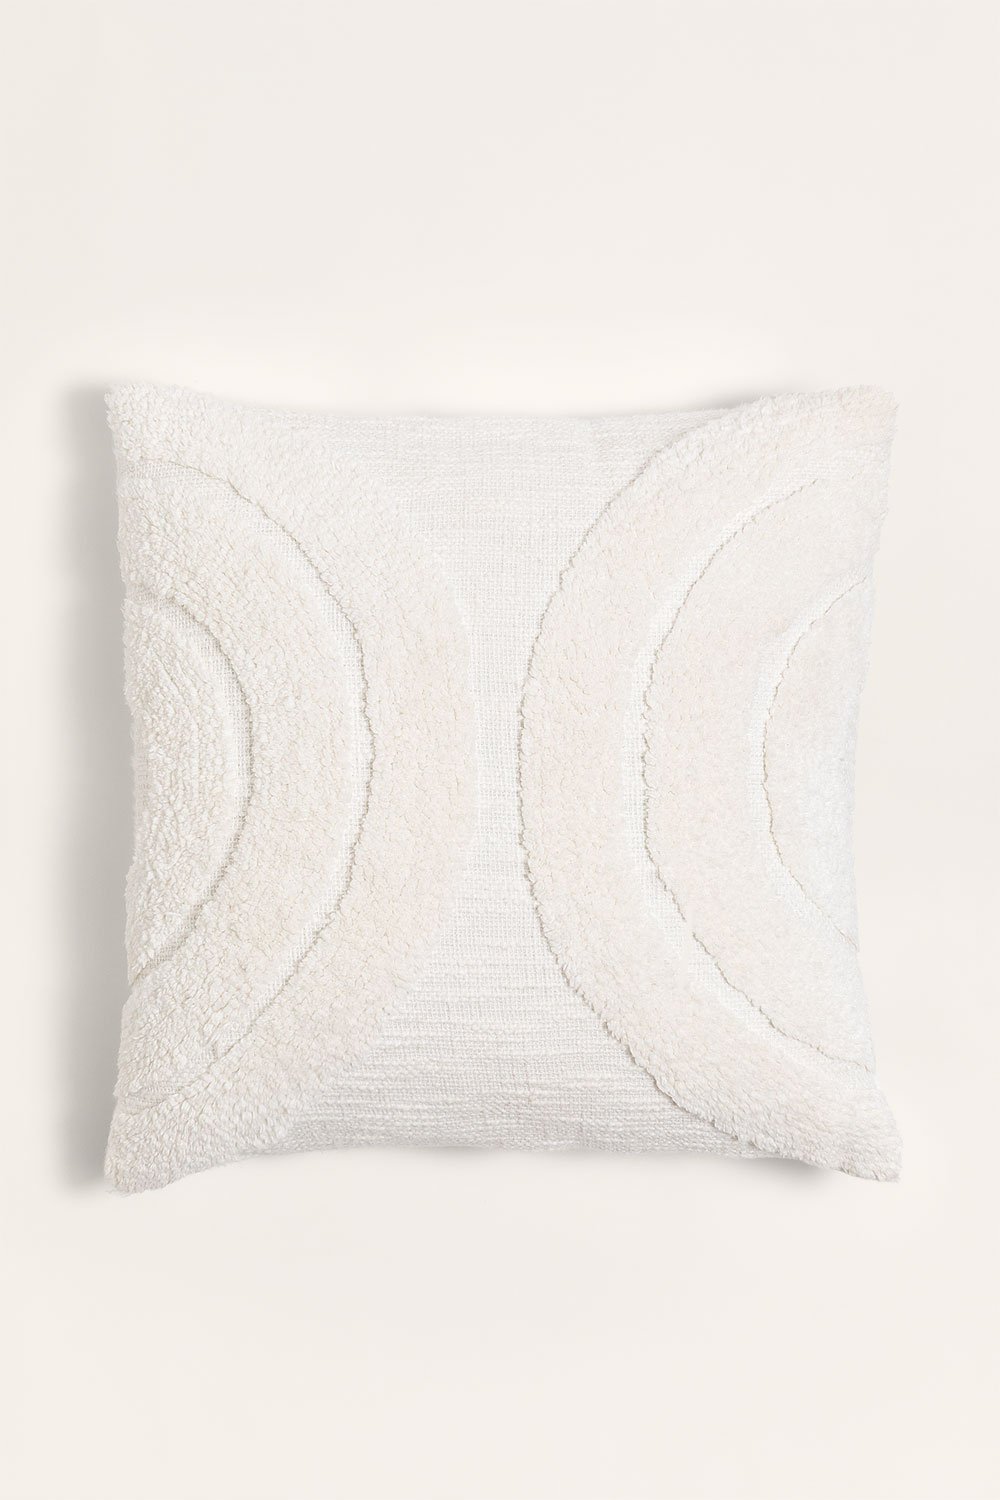 Cuscino quadrato in cotone (45x45 cm) Zaylee, immagine della galleria 1